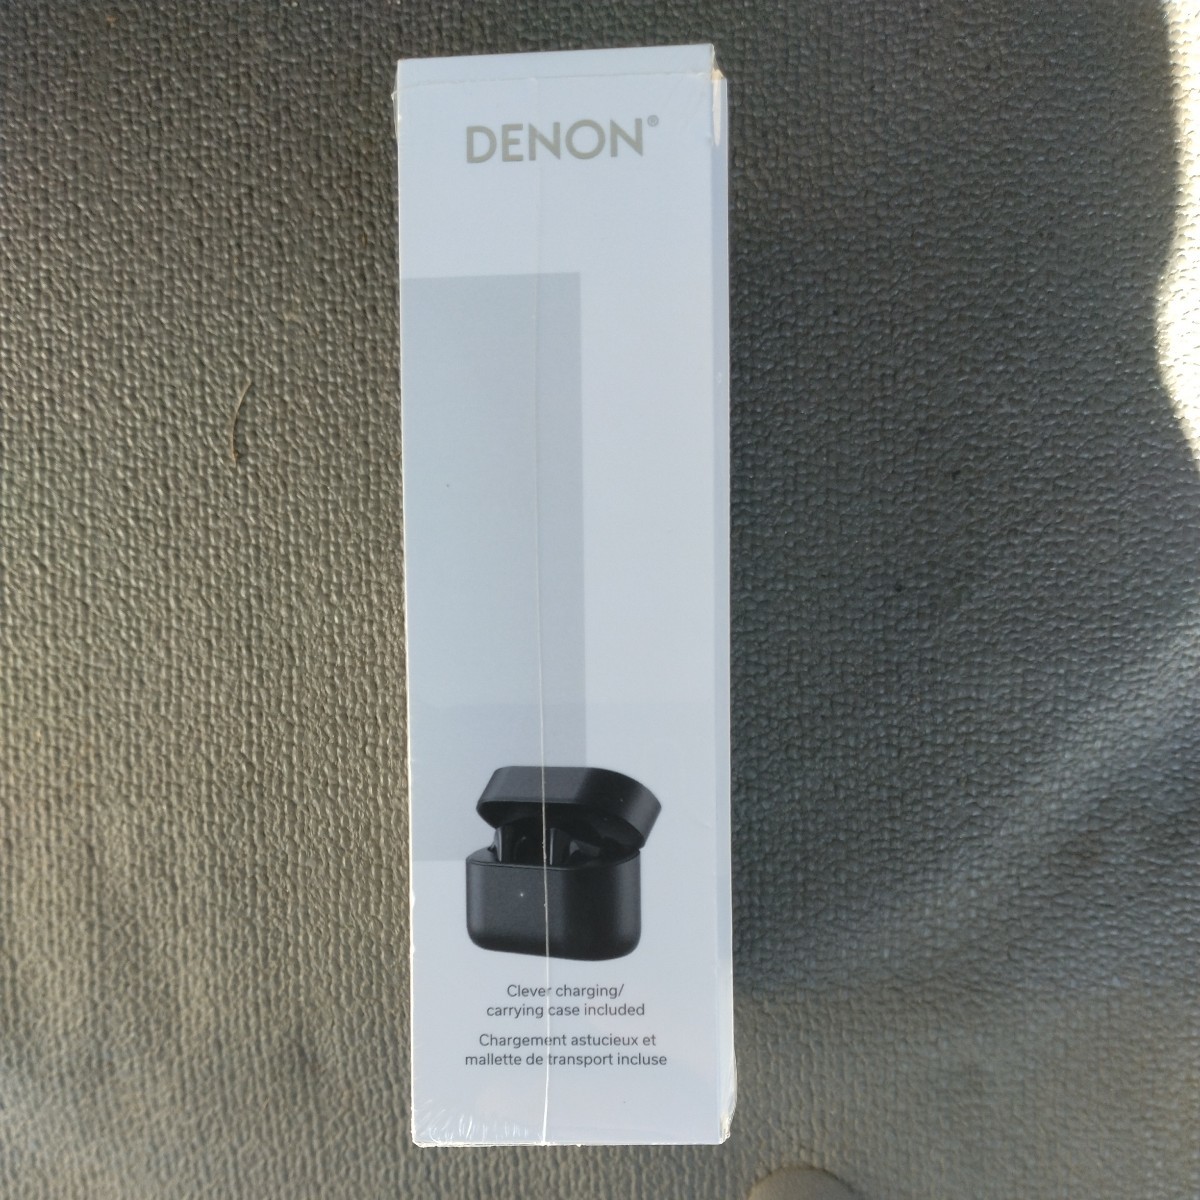 デノン Denon AHC830NCW ノイズキャンセル機能対応 完全ワイヤレス・インイヤーヘッドホン ブラック新品未開封送料無料_画像3